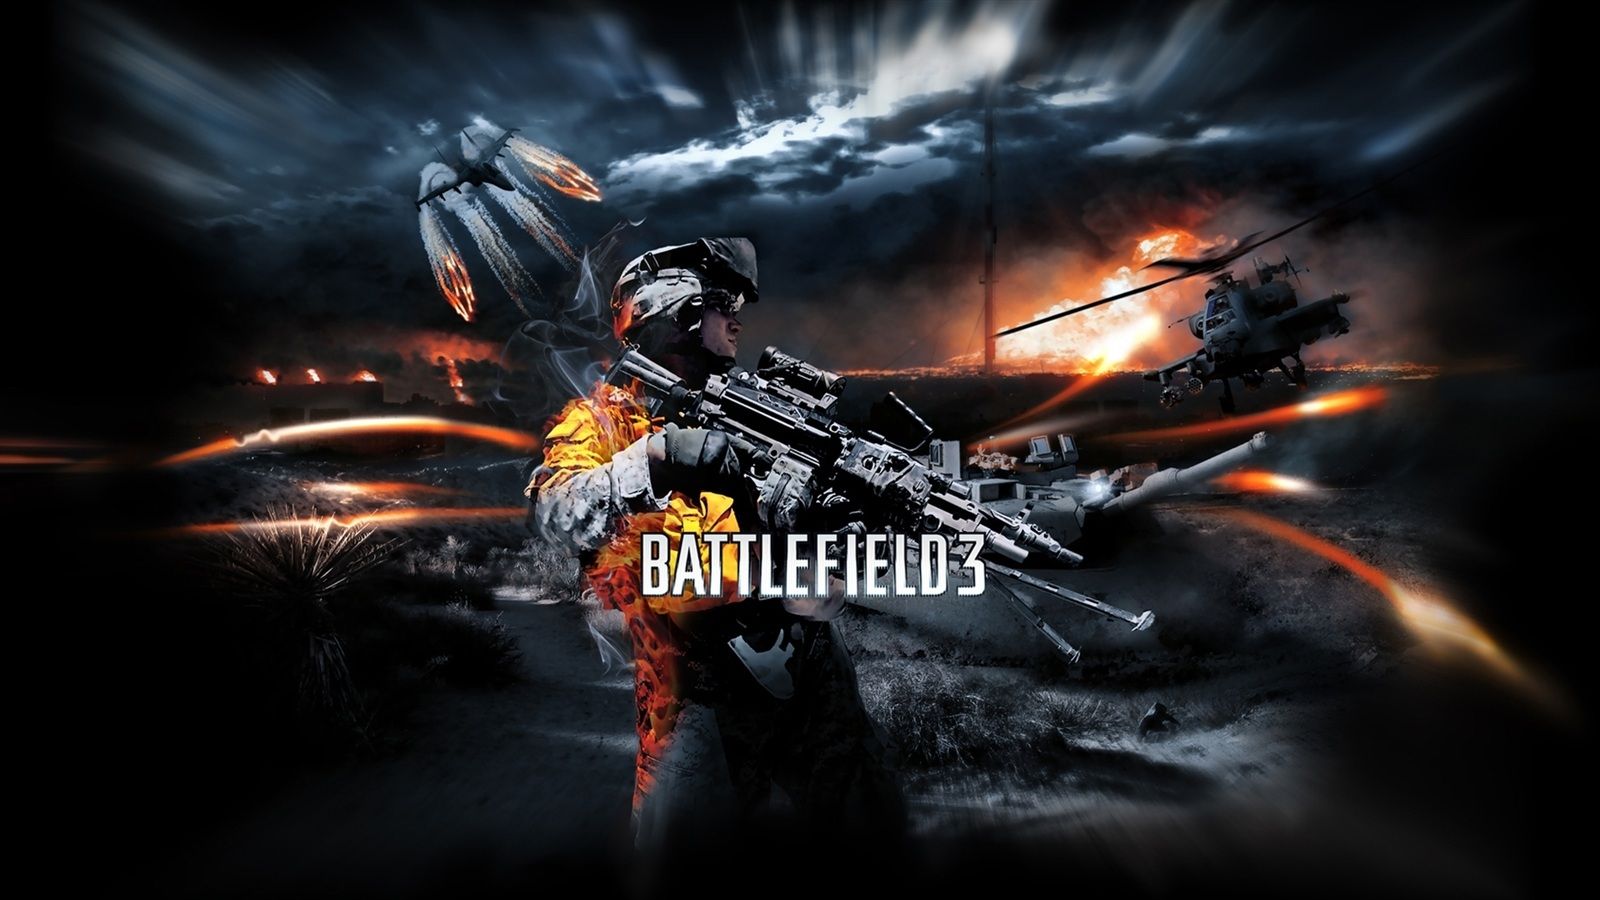 Battlefield 3 game HD Wallpaper 1600x900 resolution wallpaper